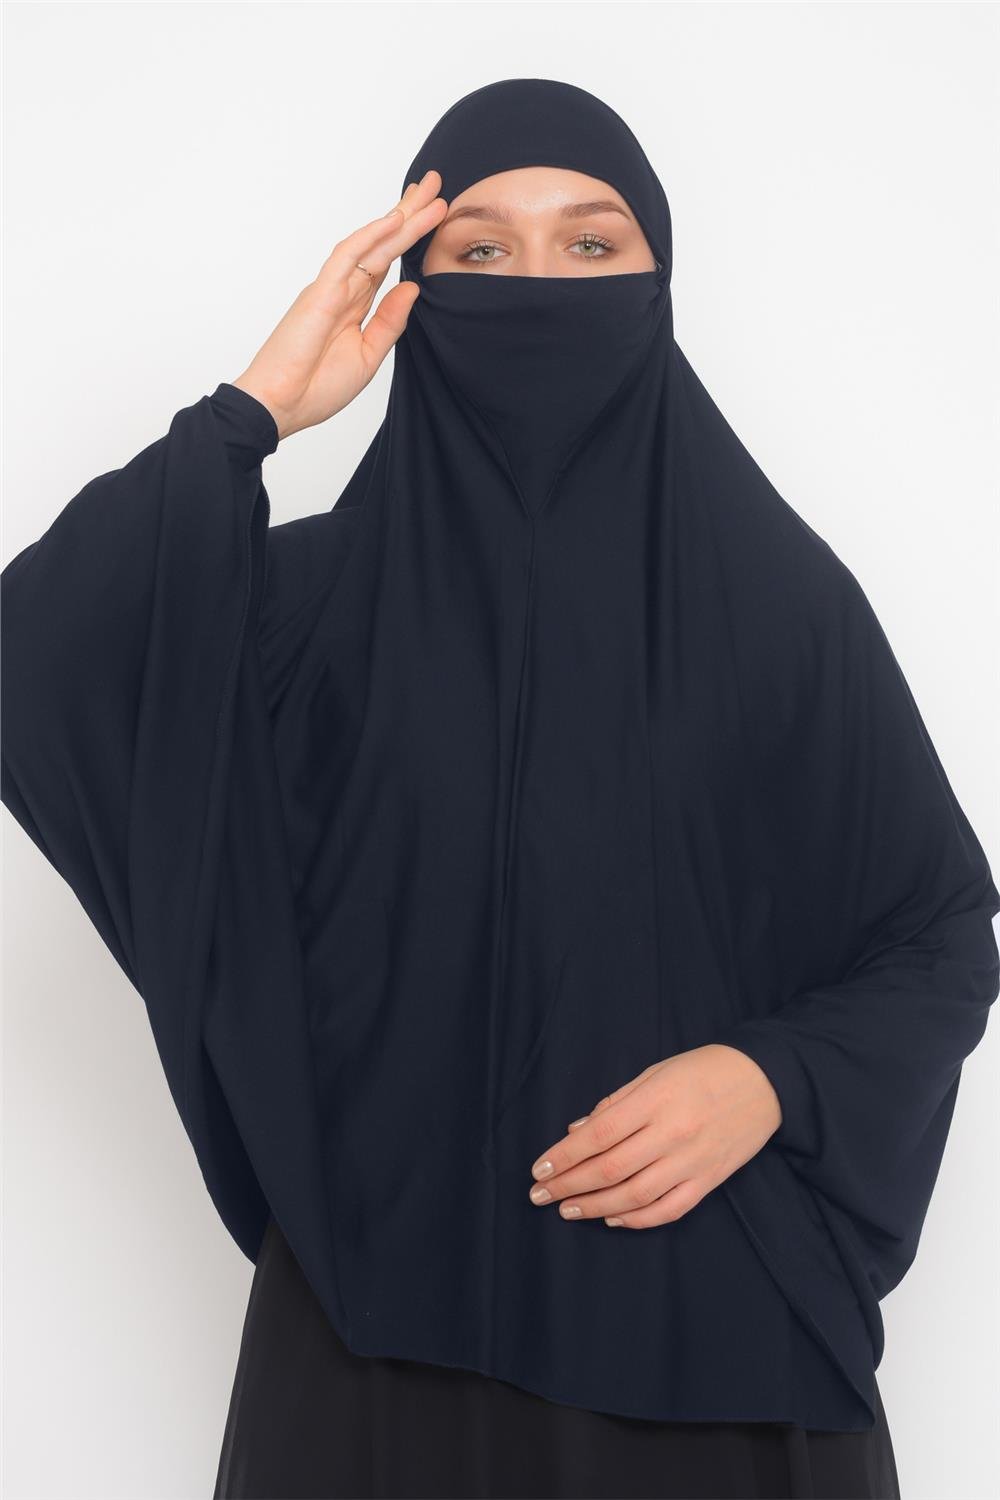 حجاب نقاب قطعة واحدة بأكمام 5xl كحلي الآن من التوبة لاناقة مميزة